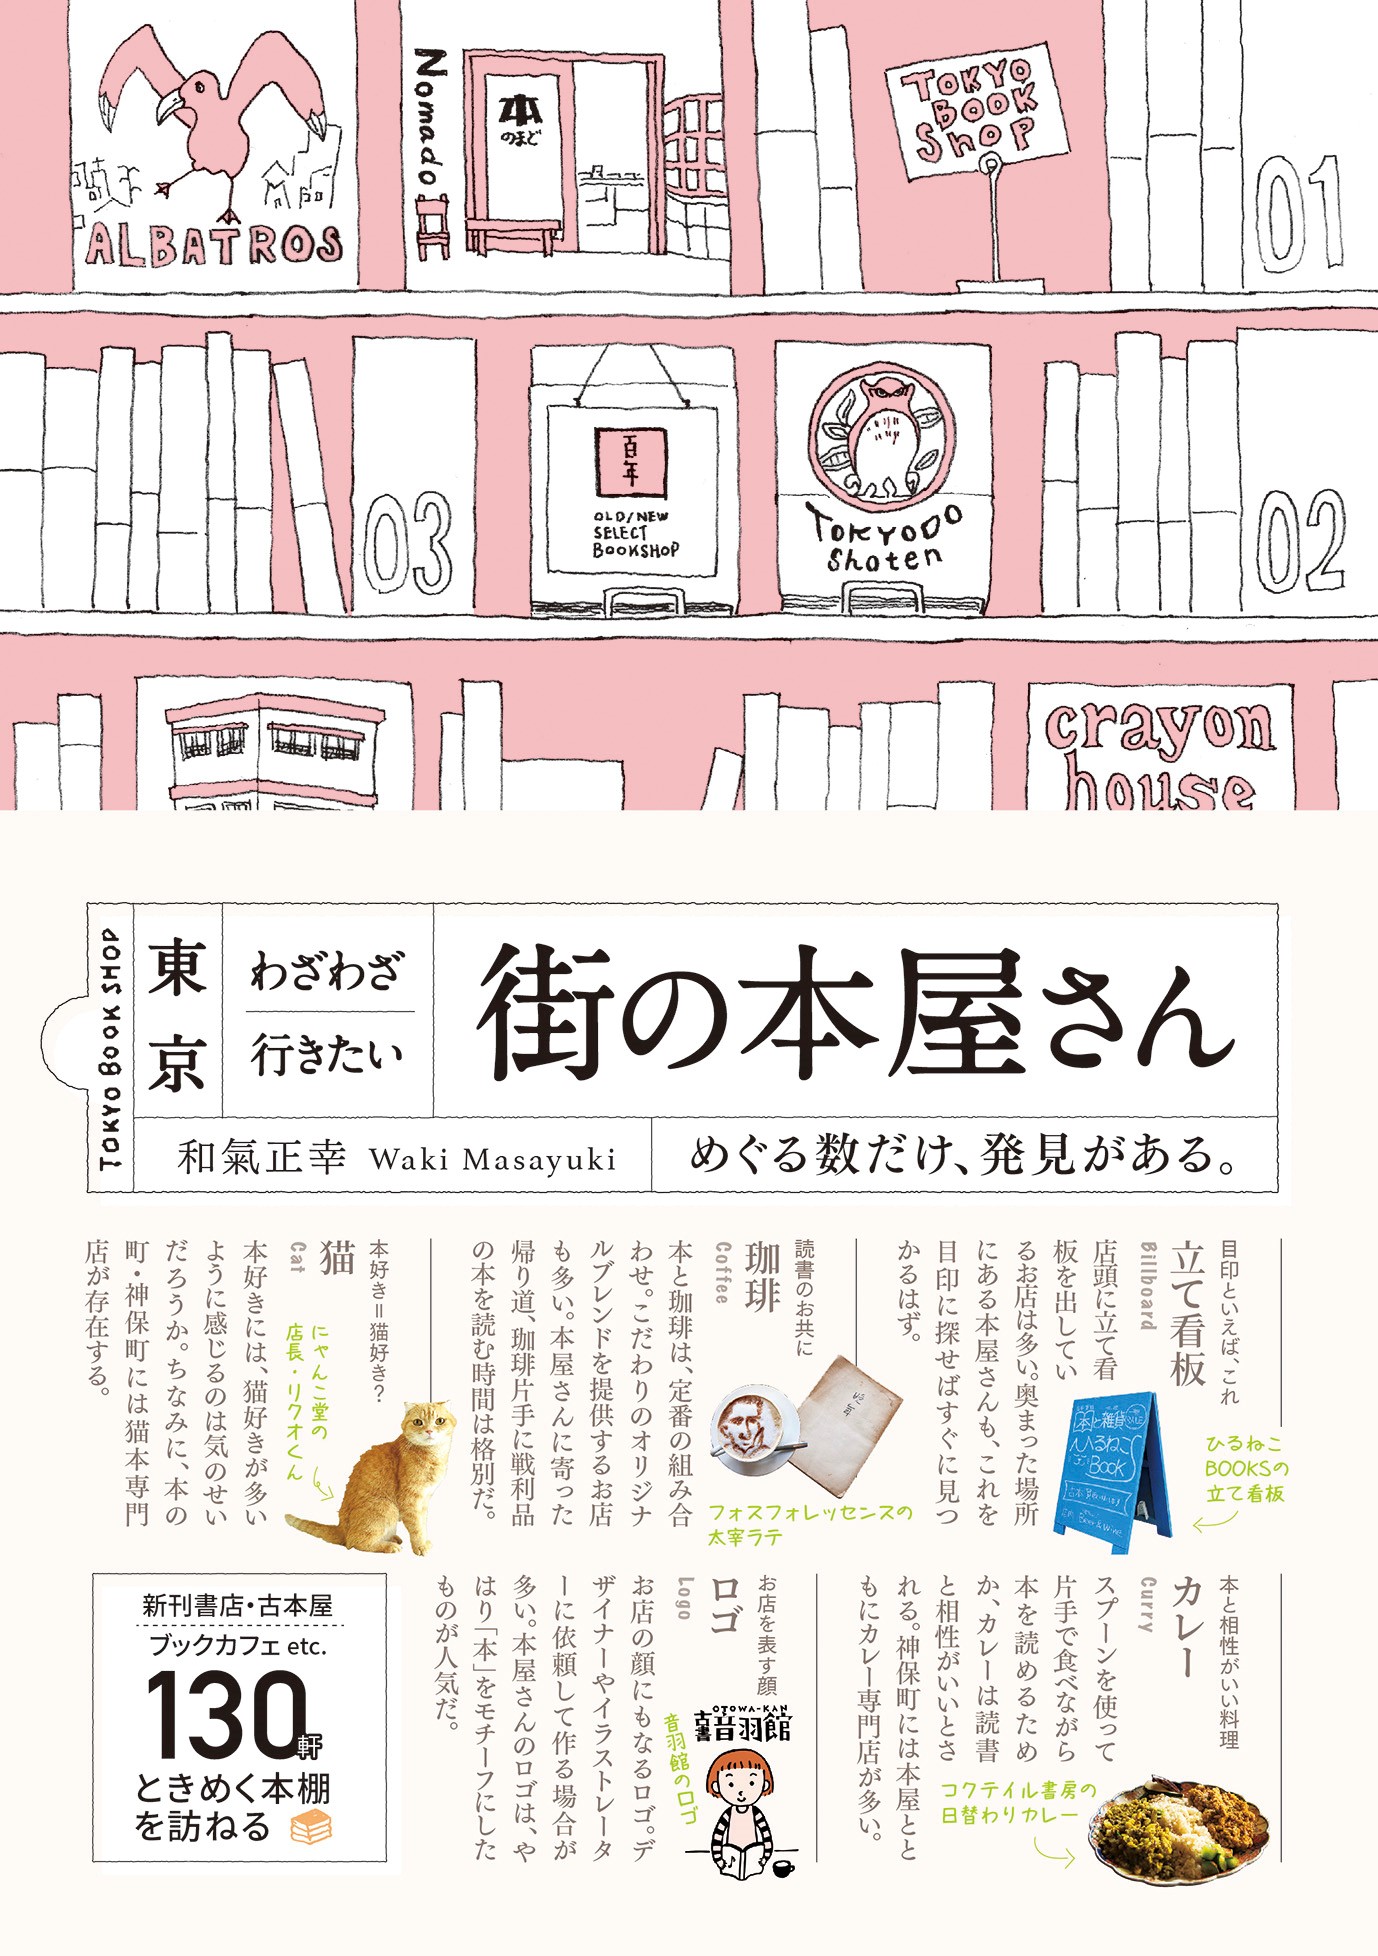 東京わざわざ行きたい街の本屋さんの商品画像